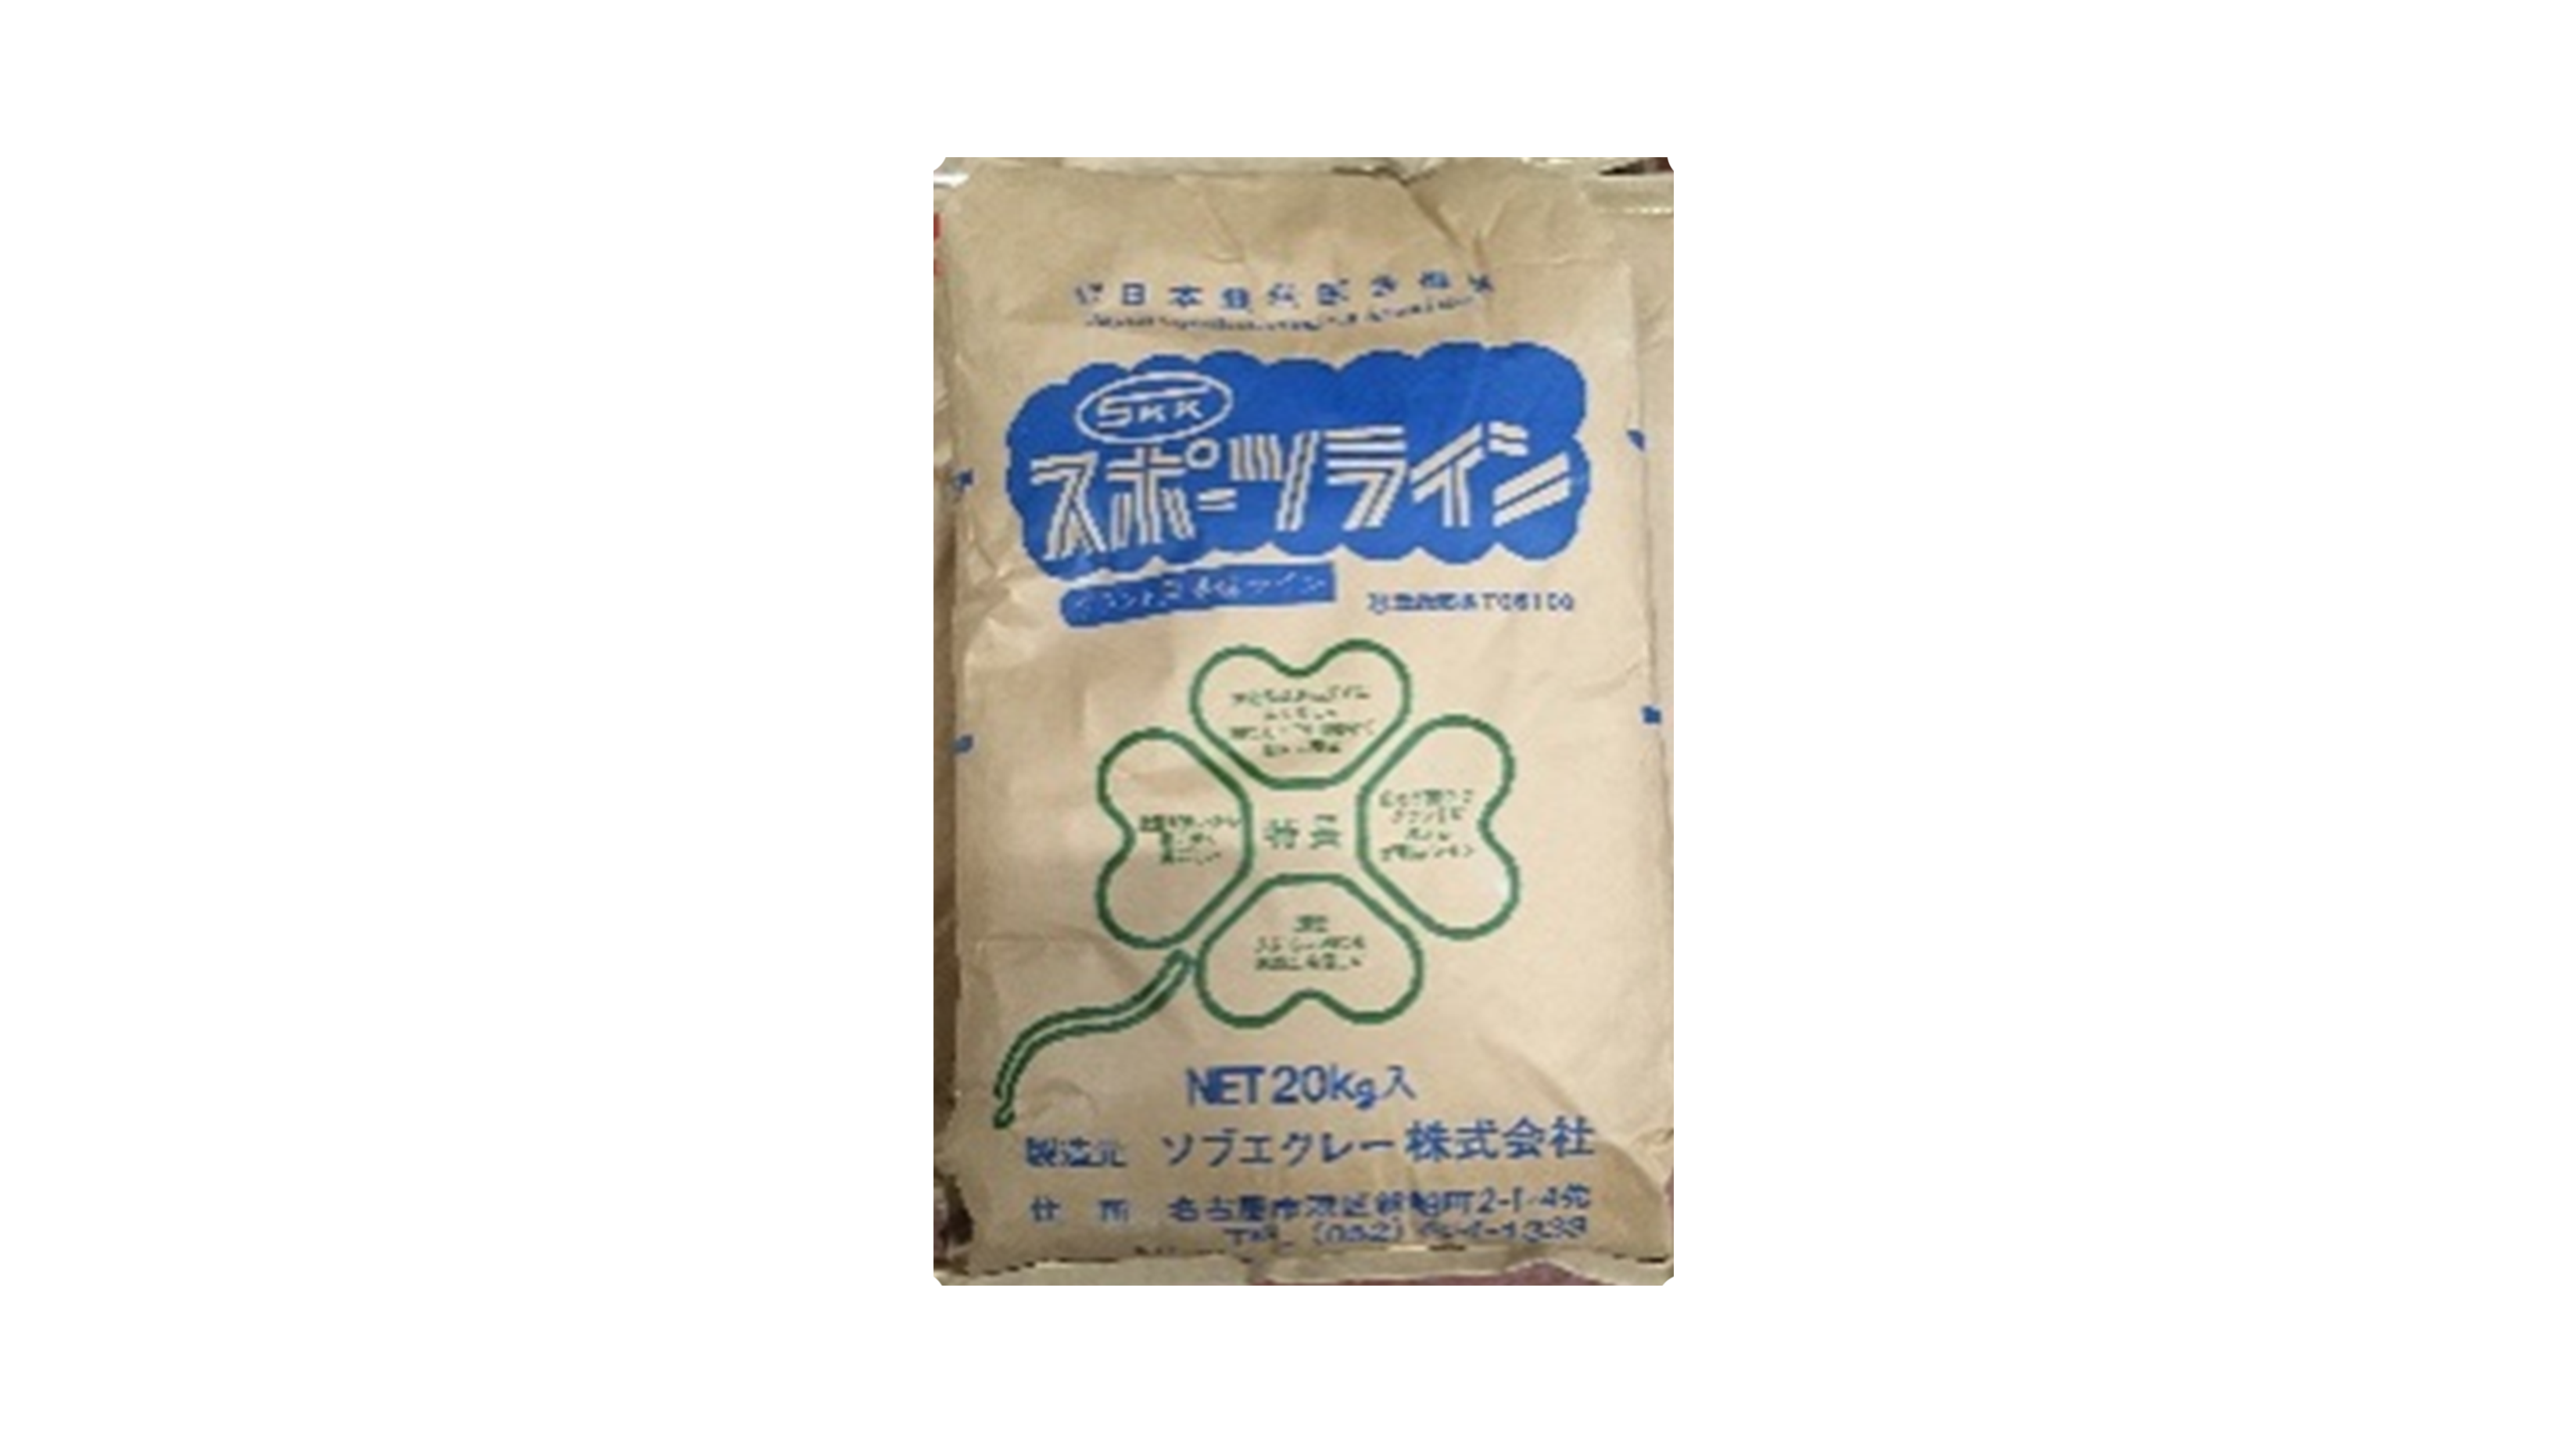 カラー・卵殻ライン材 ガイアフィールドライン | 浜松塩業株式会社